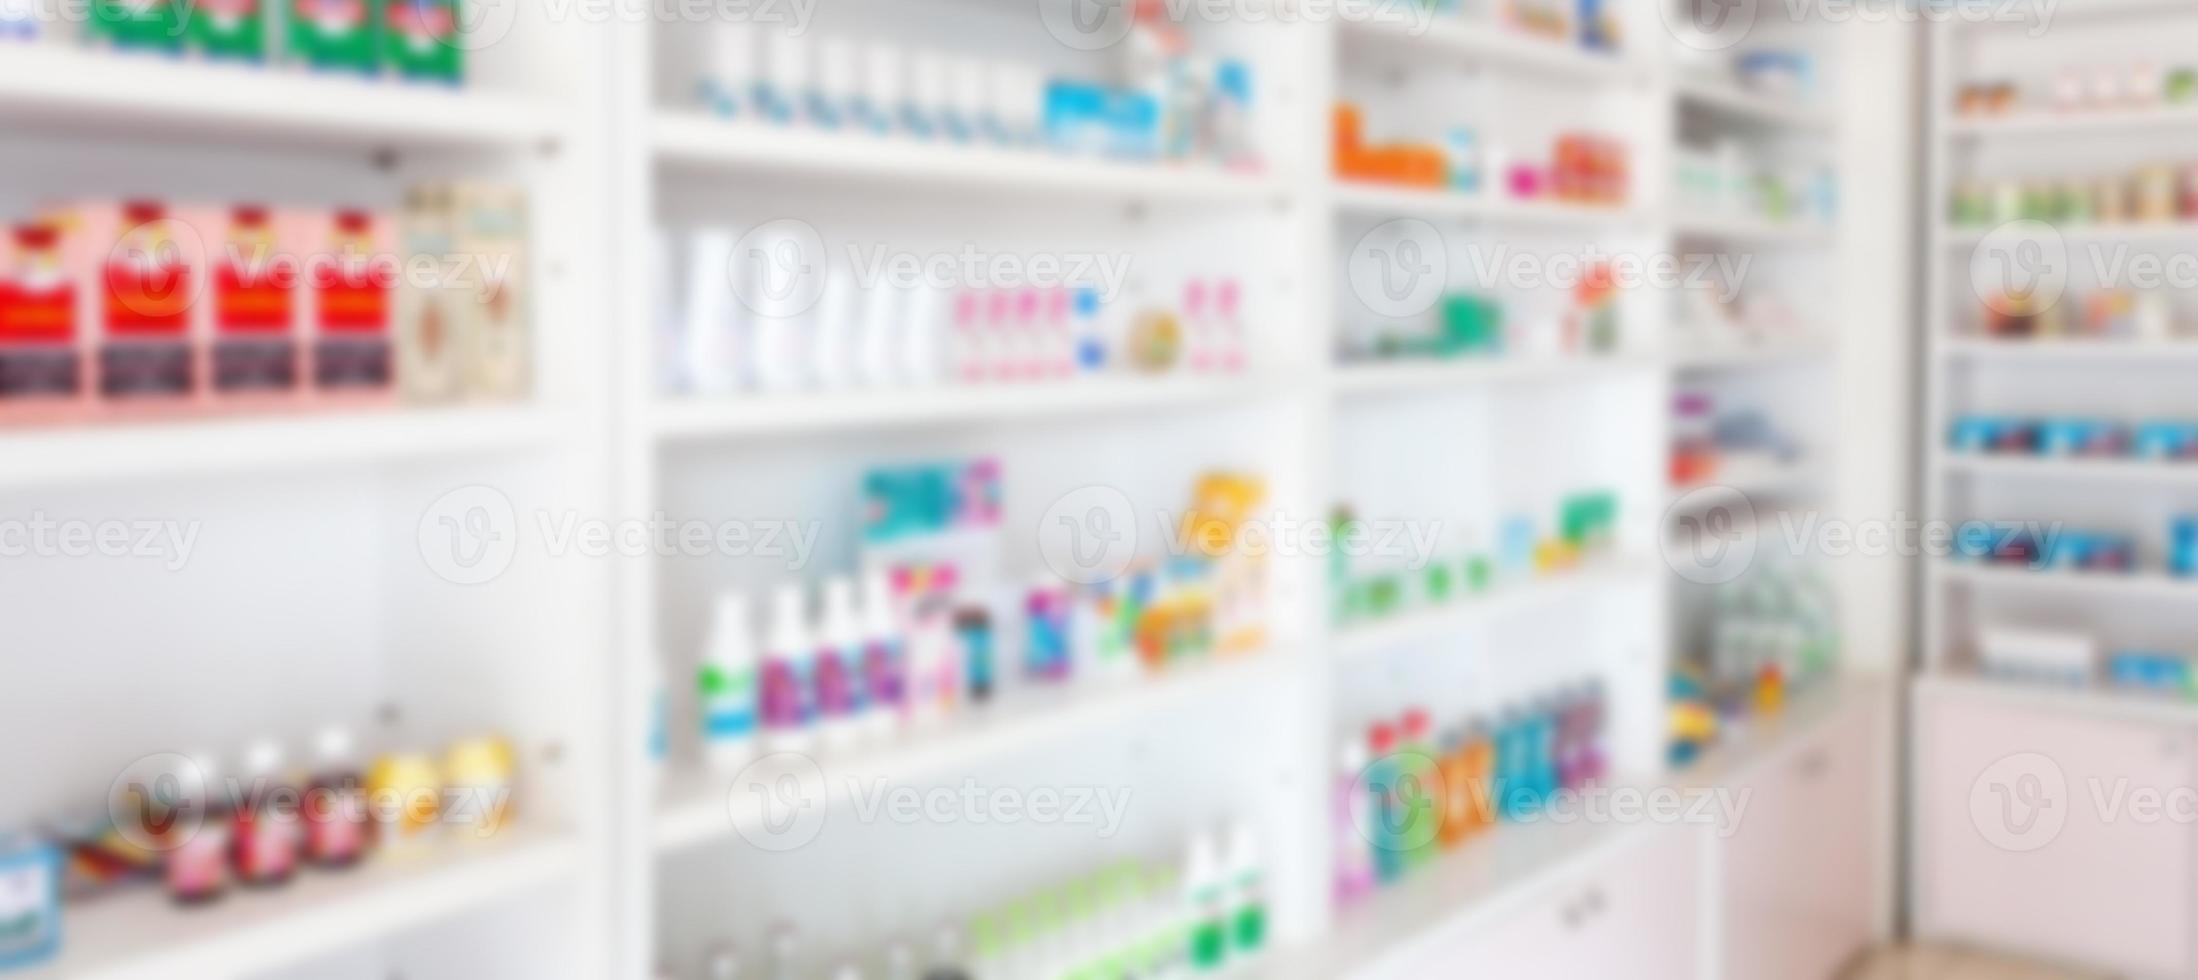 apotheek drogisterij vervagen abstracte achtergrond met medicijnen en gezondheidszorgproduct op planken foto